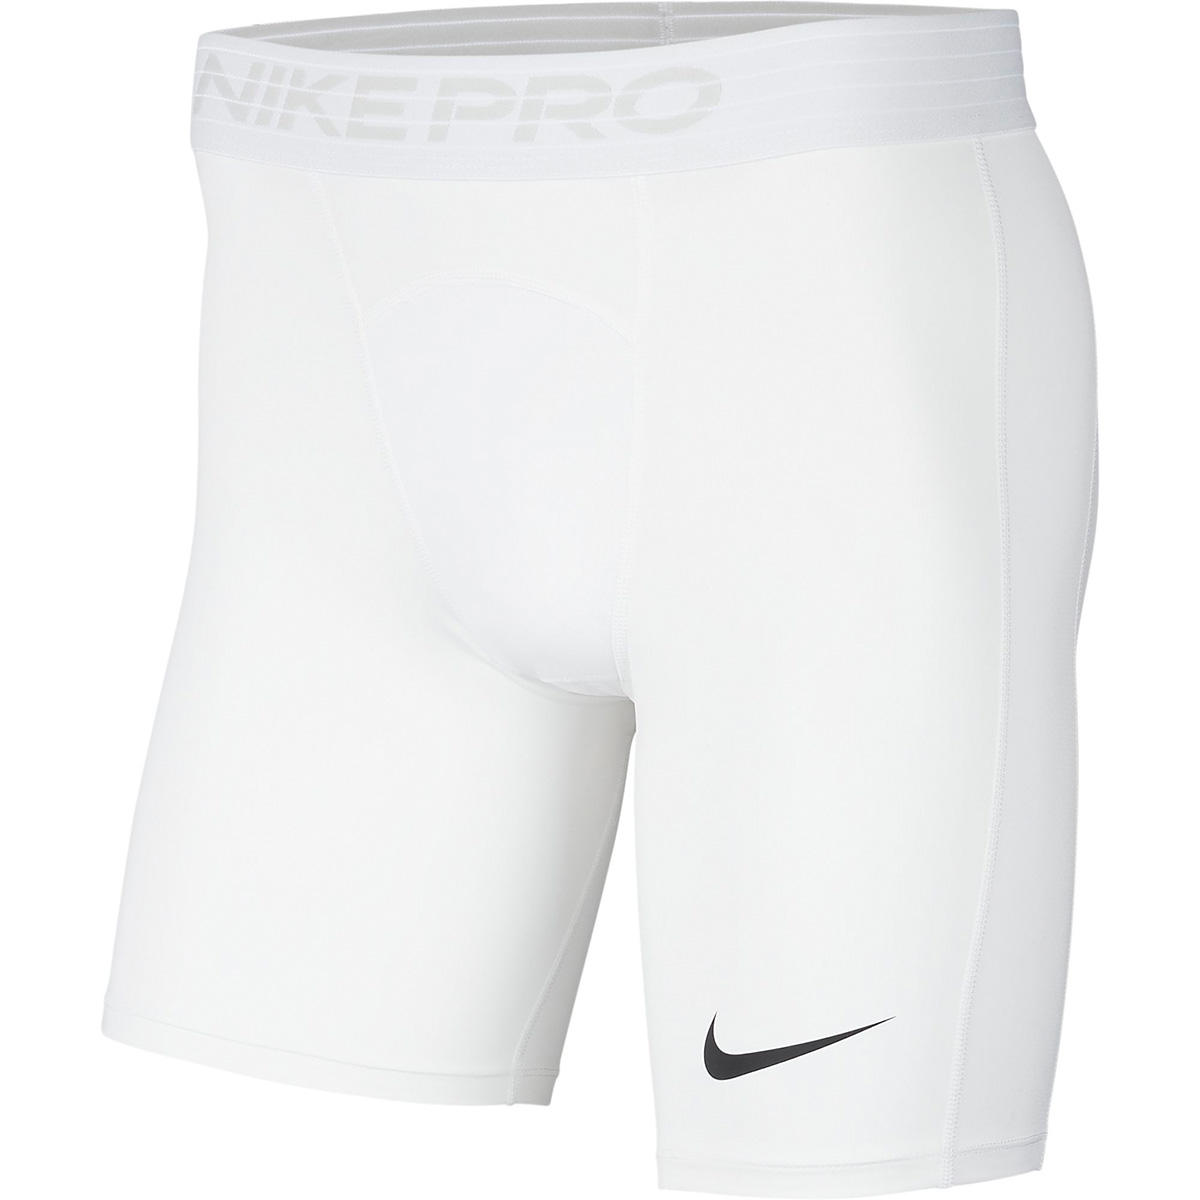 Nike Pro Compression Short Hose Dry Fit BV5588 100